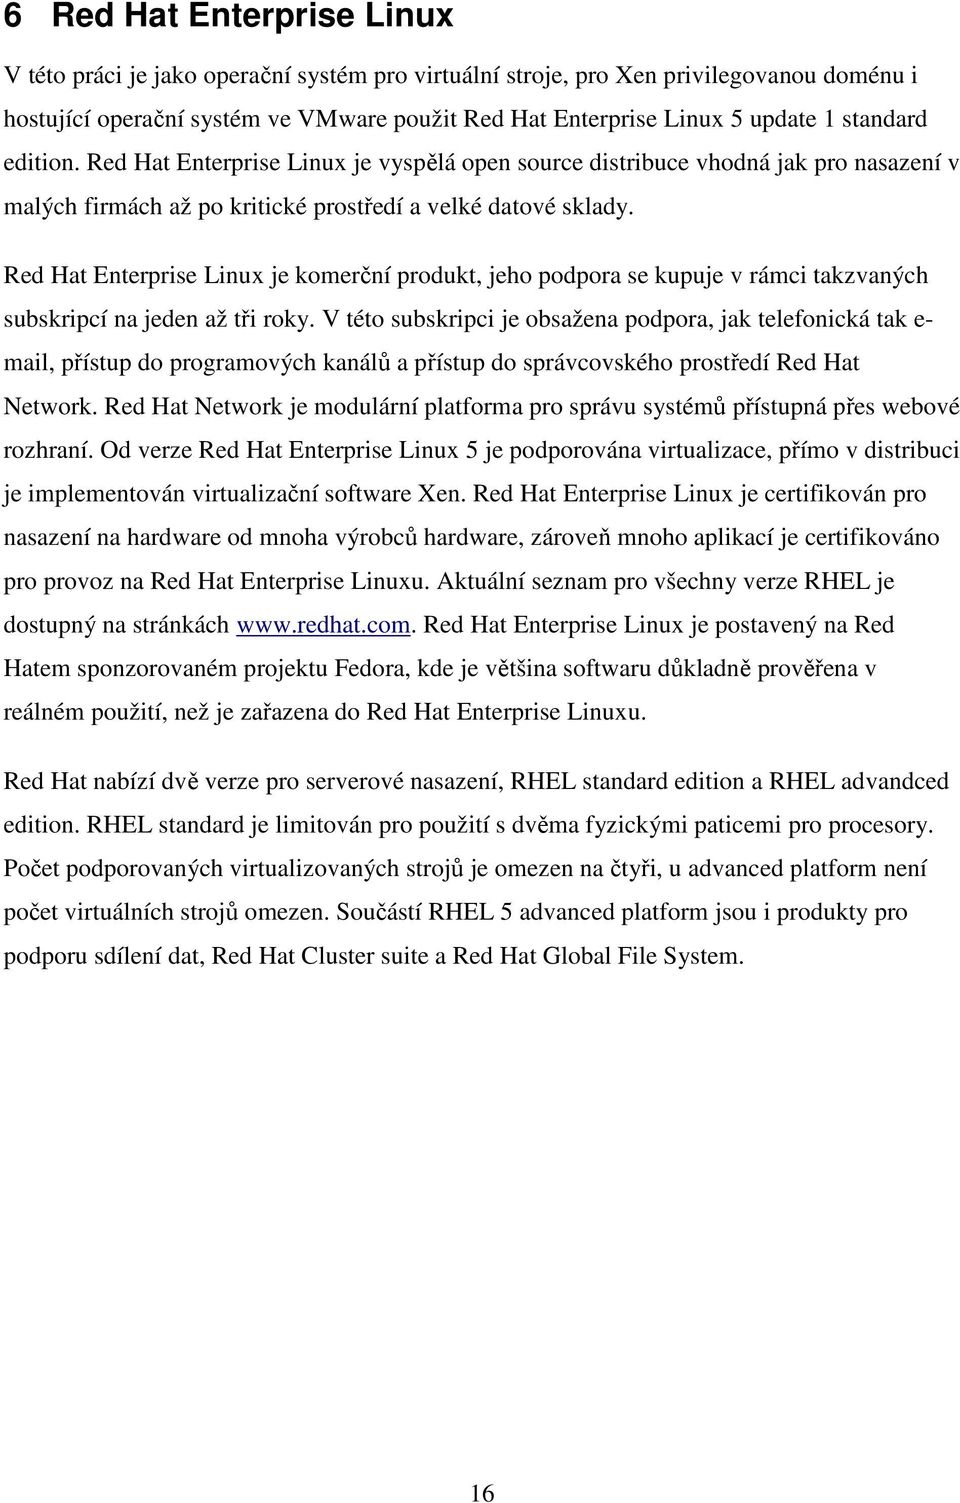 Red Hat Enterprise Linux je komerční produkt, jeho podpora se kupuje v rámci takzvaných subskripcí na jeden až tři roky.